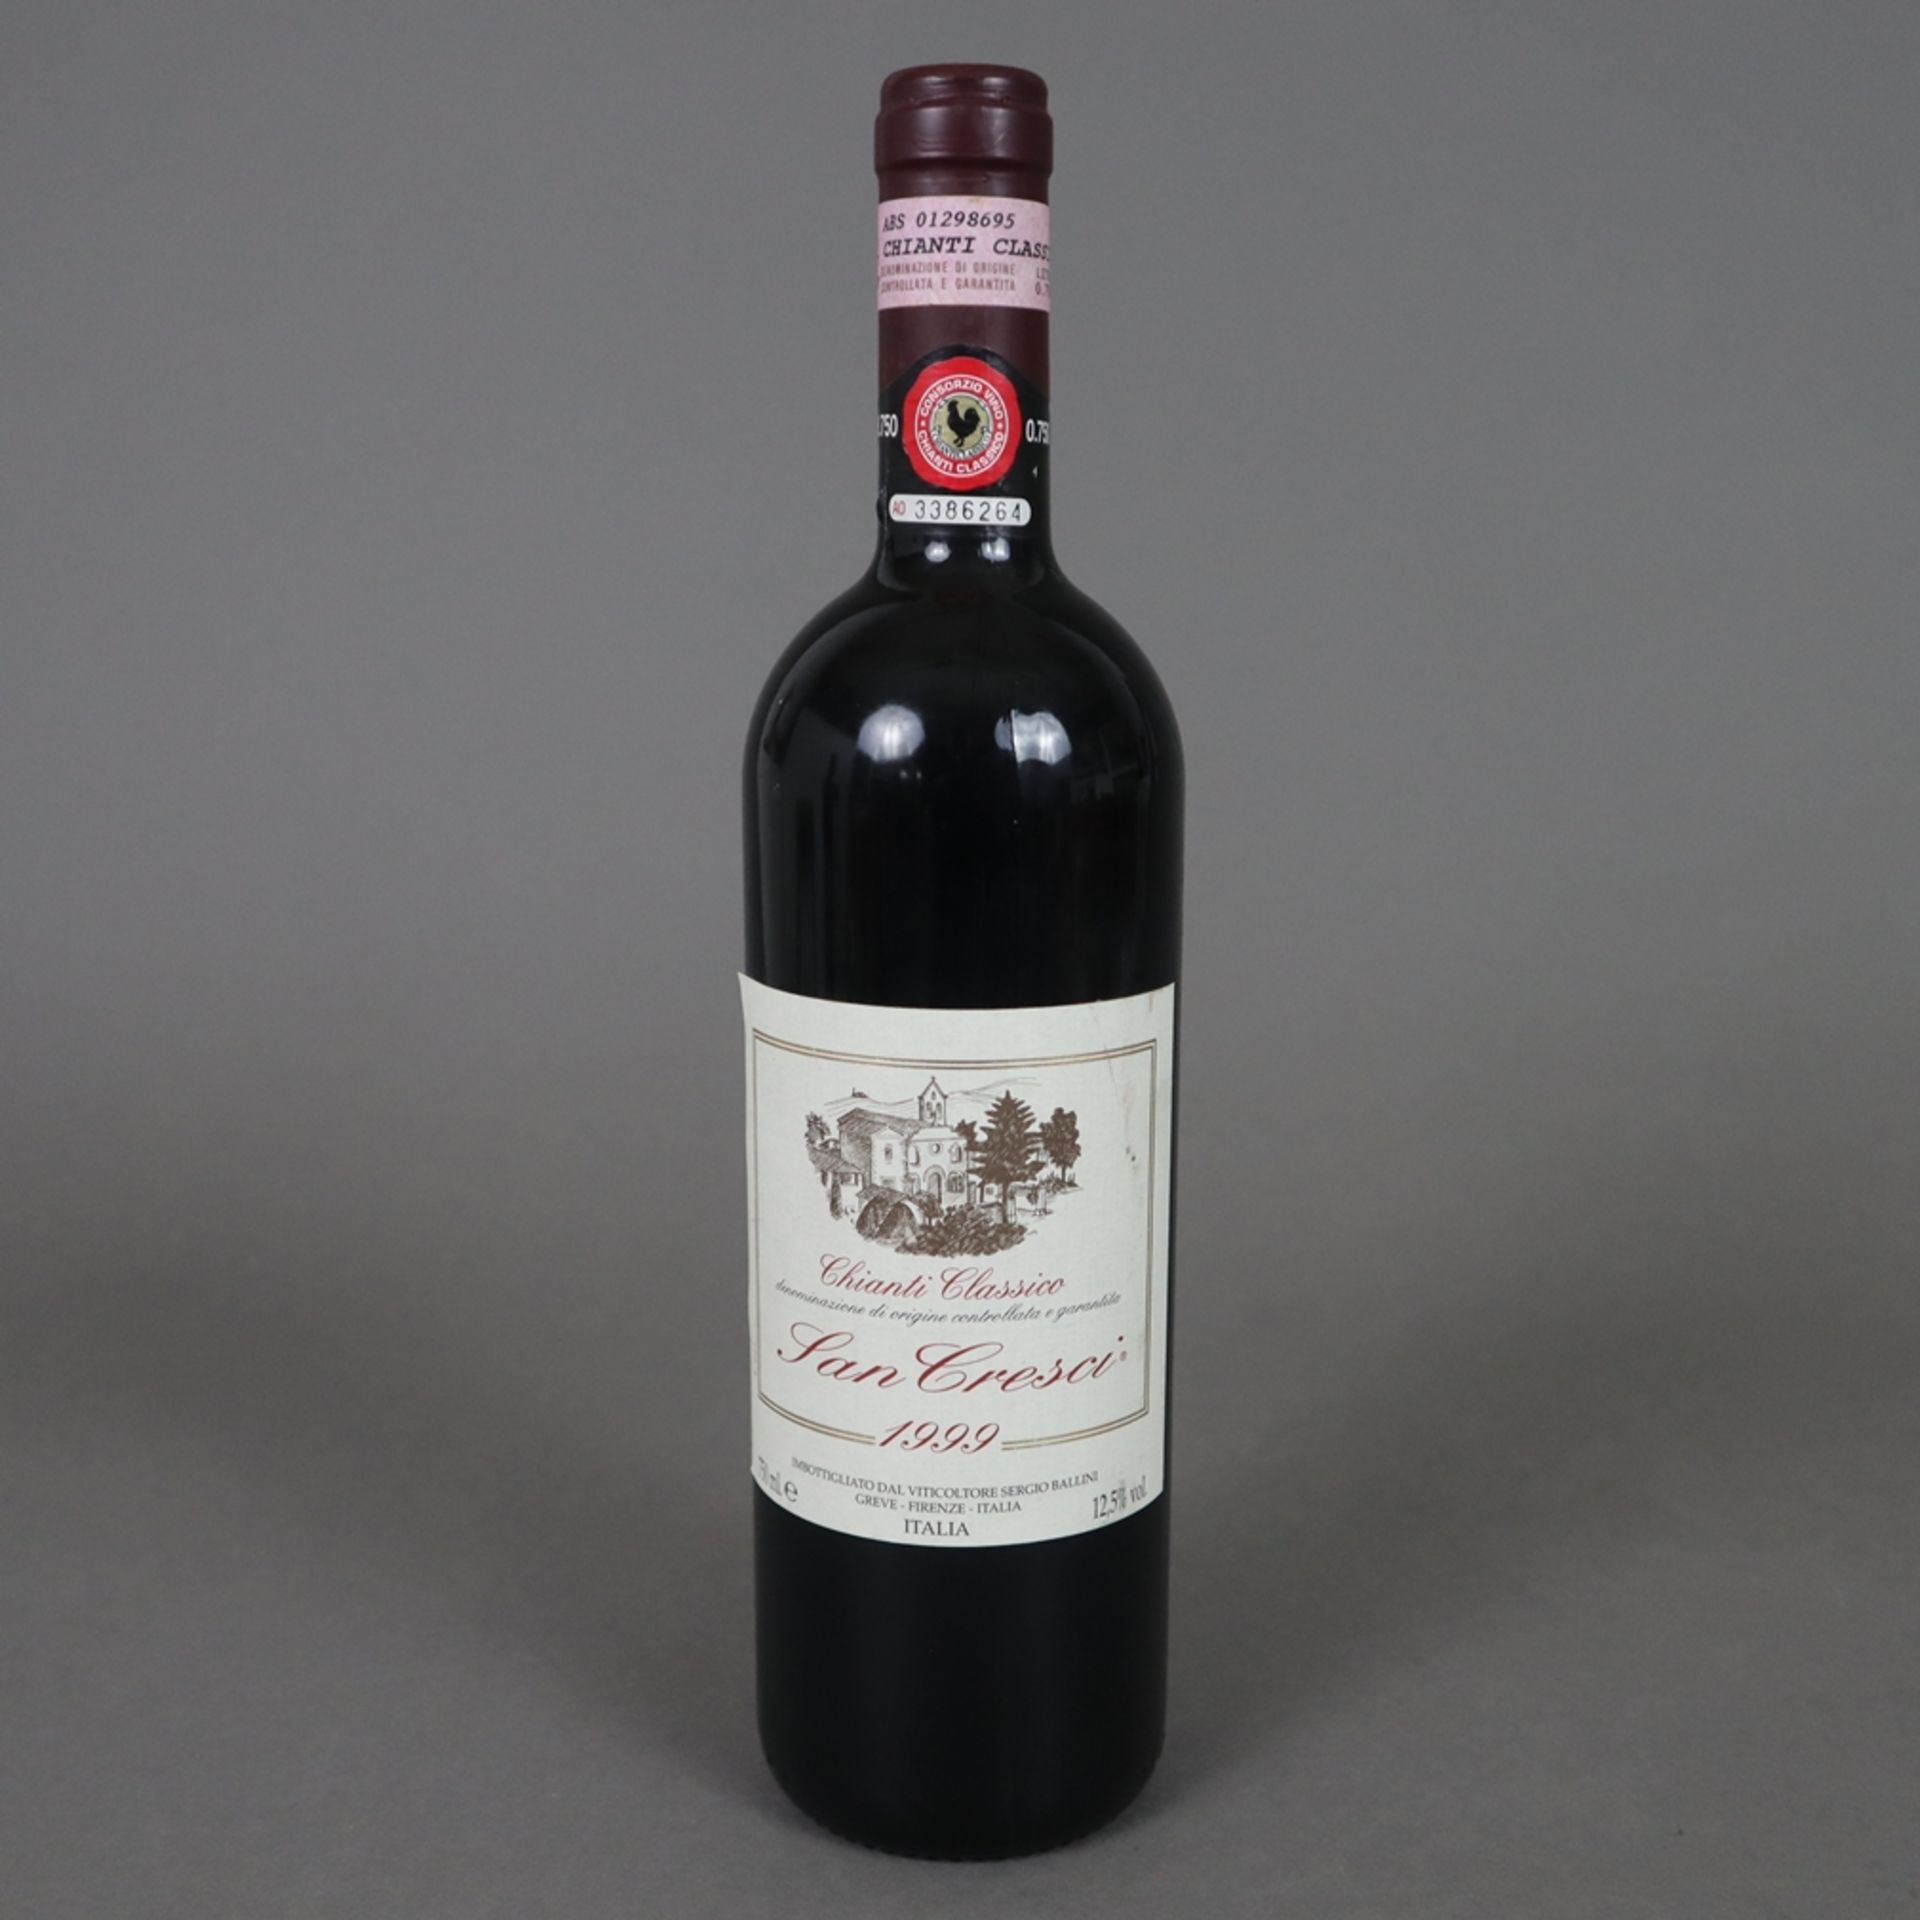 Wein - 1999 Podere San Cresci Chianti Classico, 750 ml, 12,5%